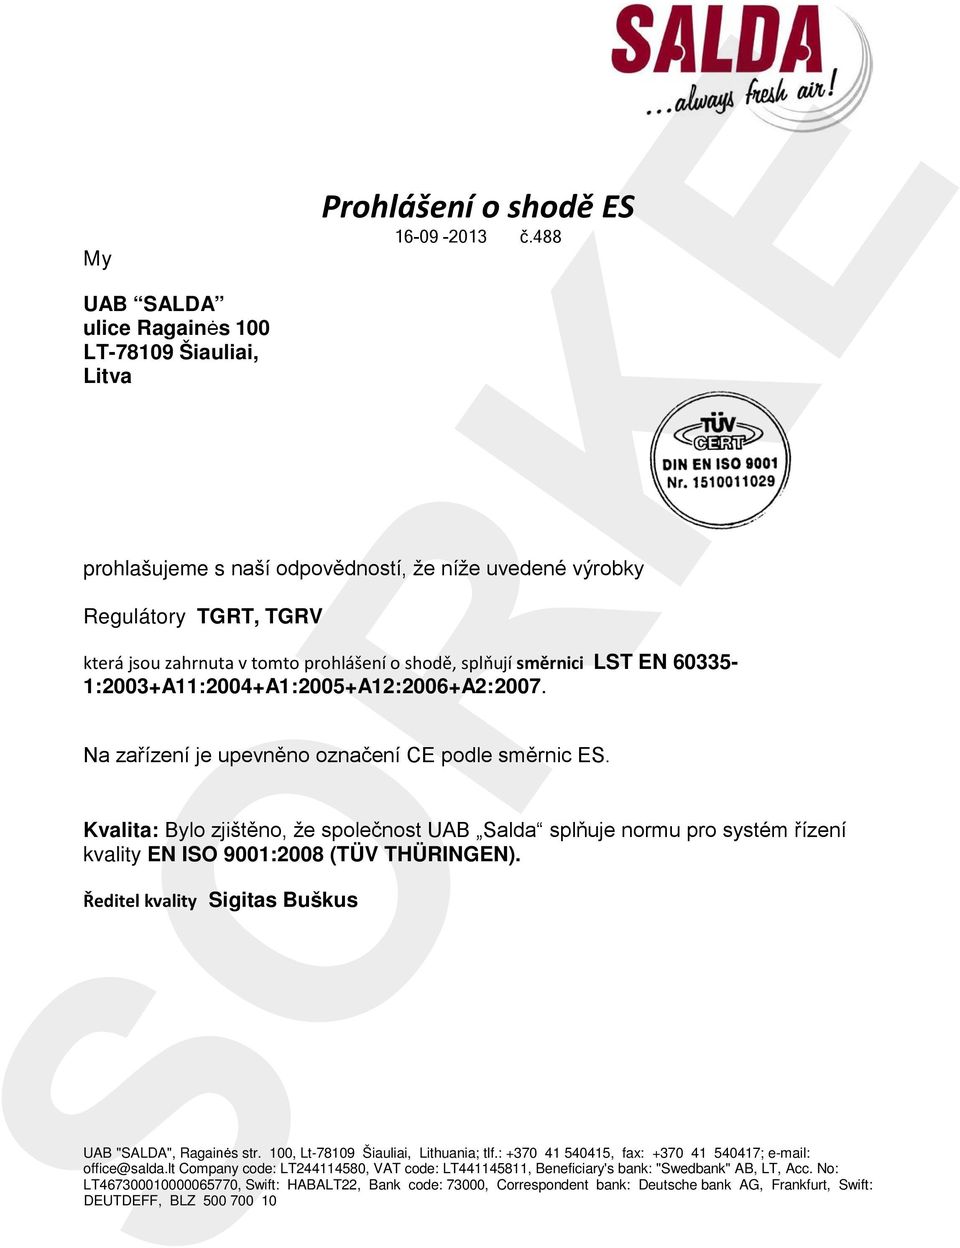 směrnici LST EN 60335-1:2003+A11:2004+A1:2005+A12:2006+A2:2007. Na zařízení je upevněno označení CE podle směrnic ES.